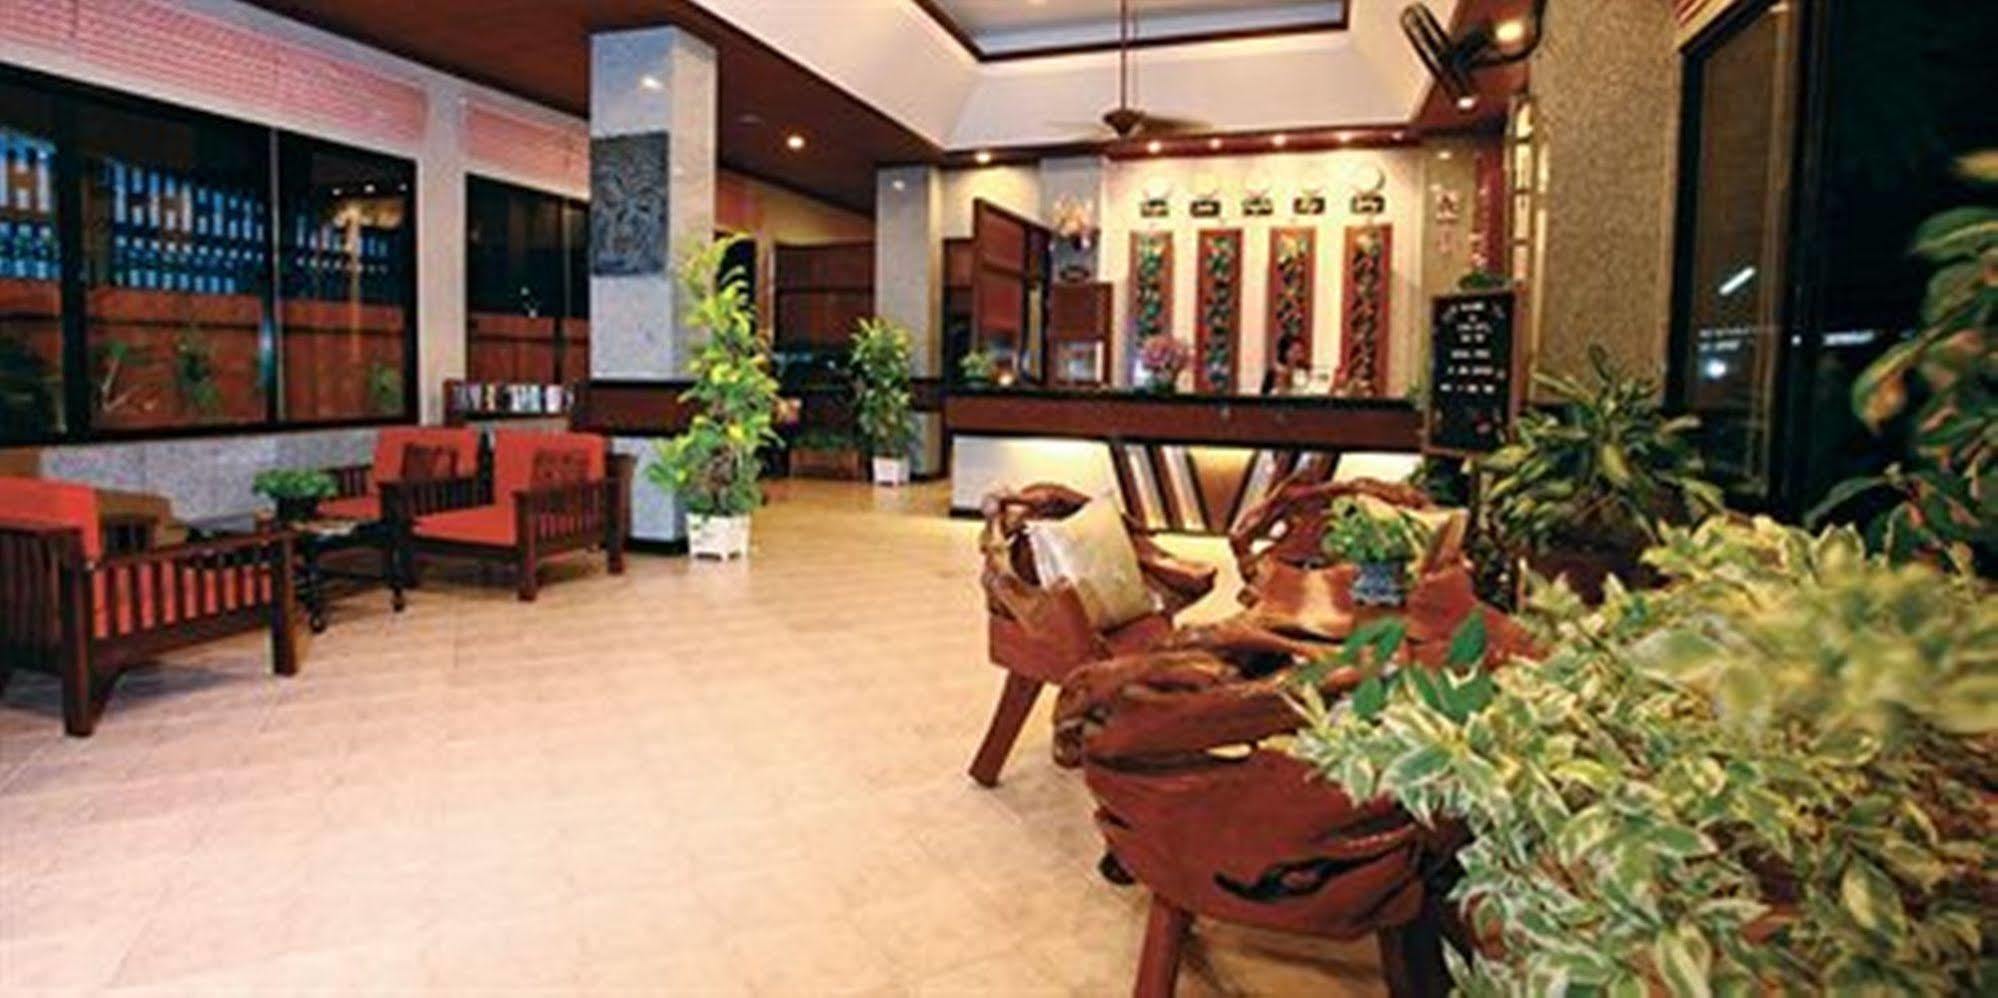 Hua Hin Loft Hotel Luaran gambar